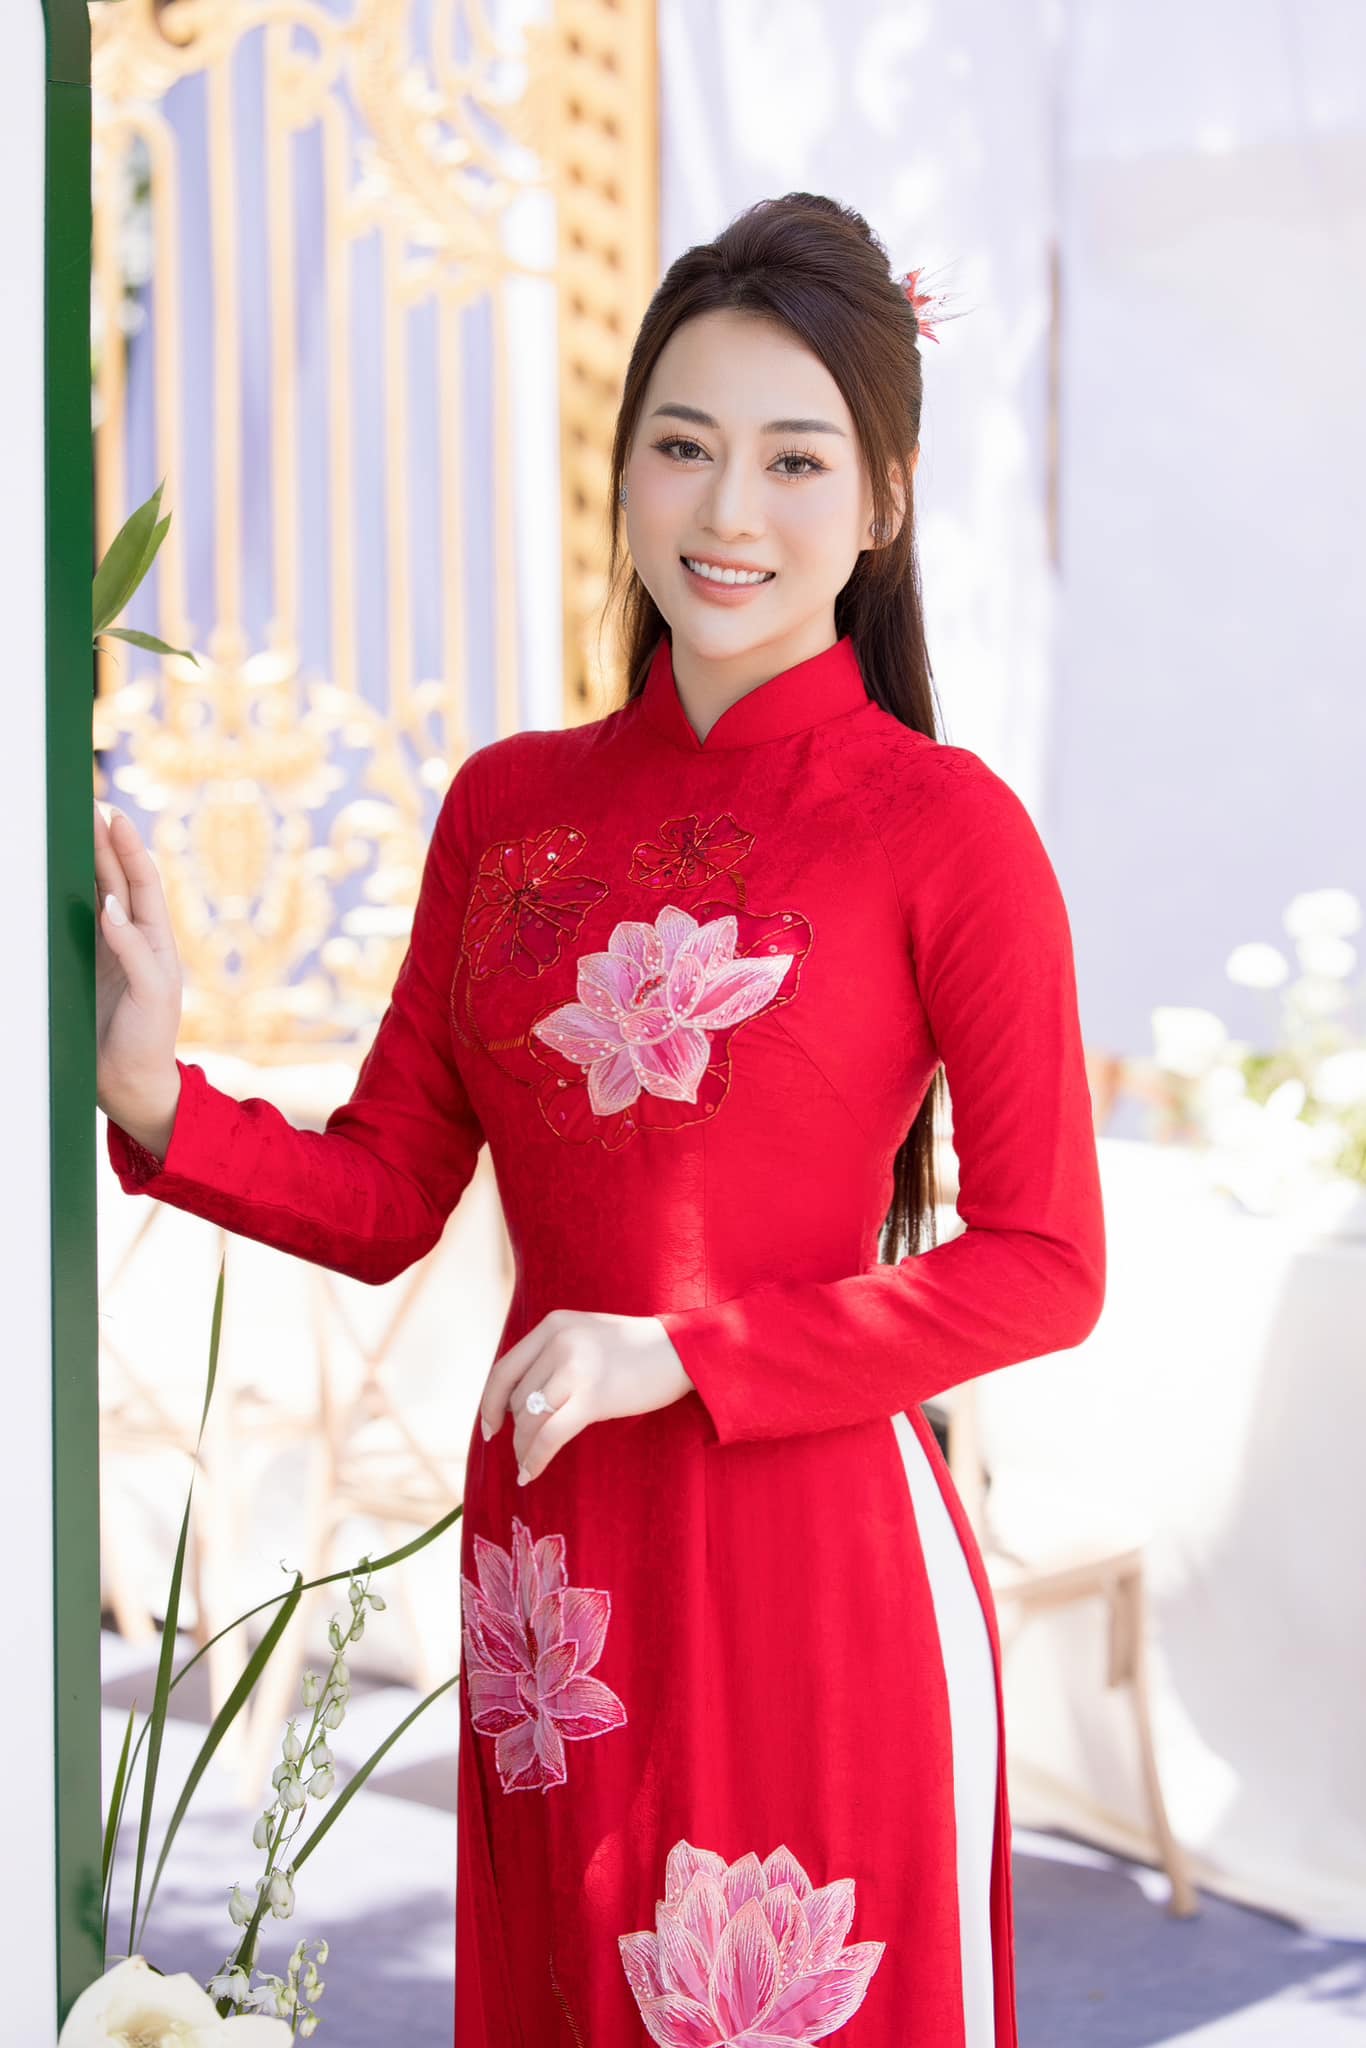 Hoa hậu Ngọc Hân khoe ảnh Phương Oanh tại lễ ăn hỏi. Ảnh: Facebook Ngọc Hân